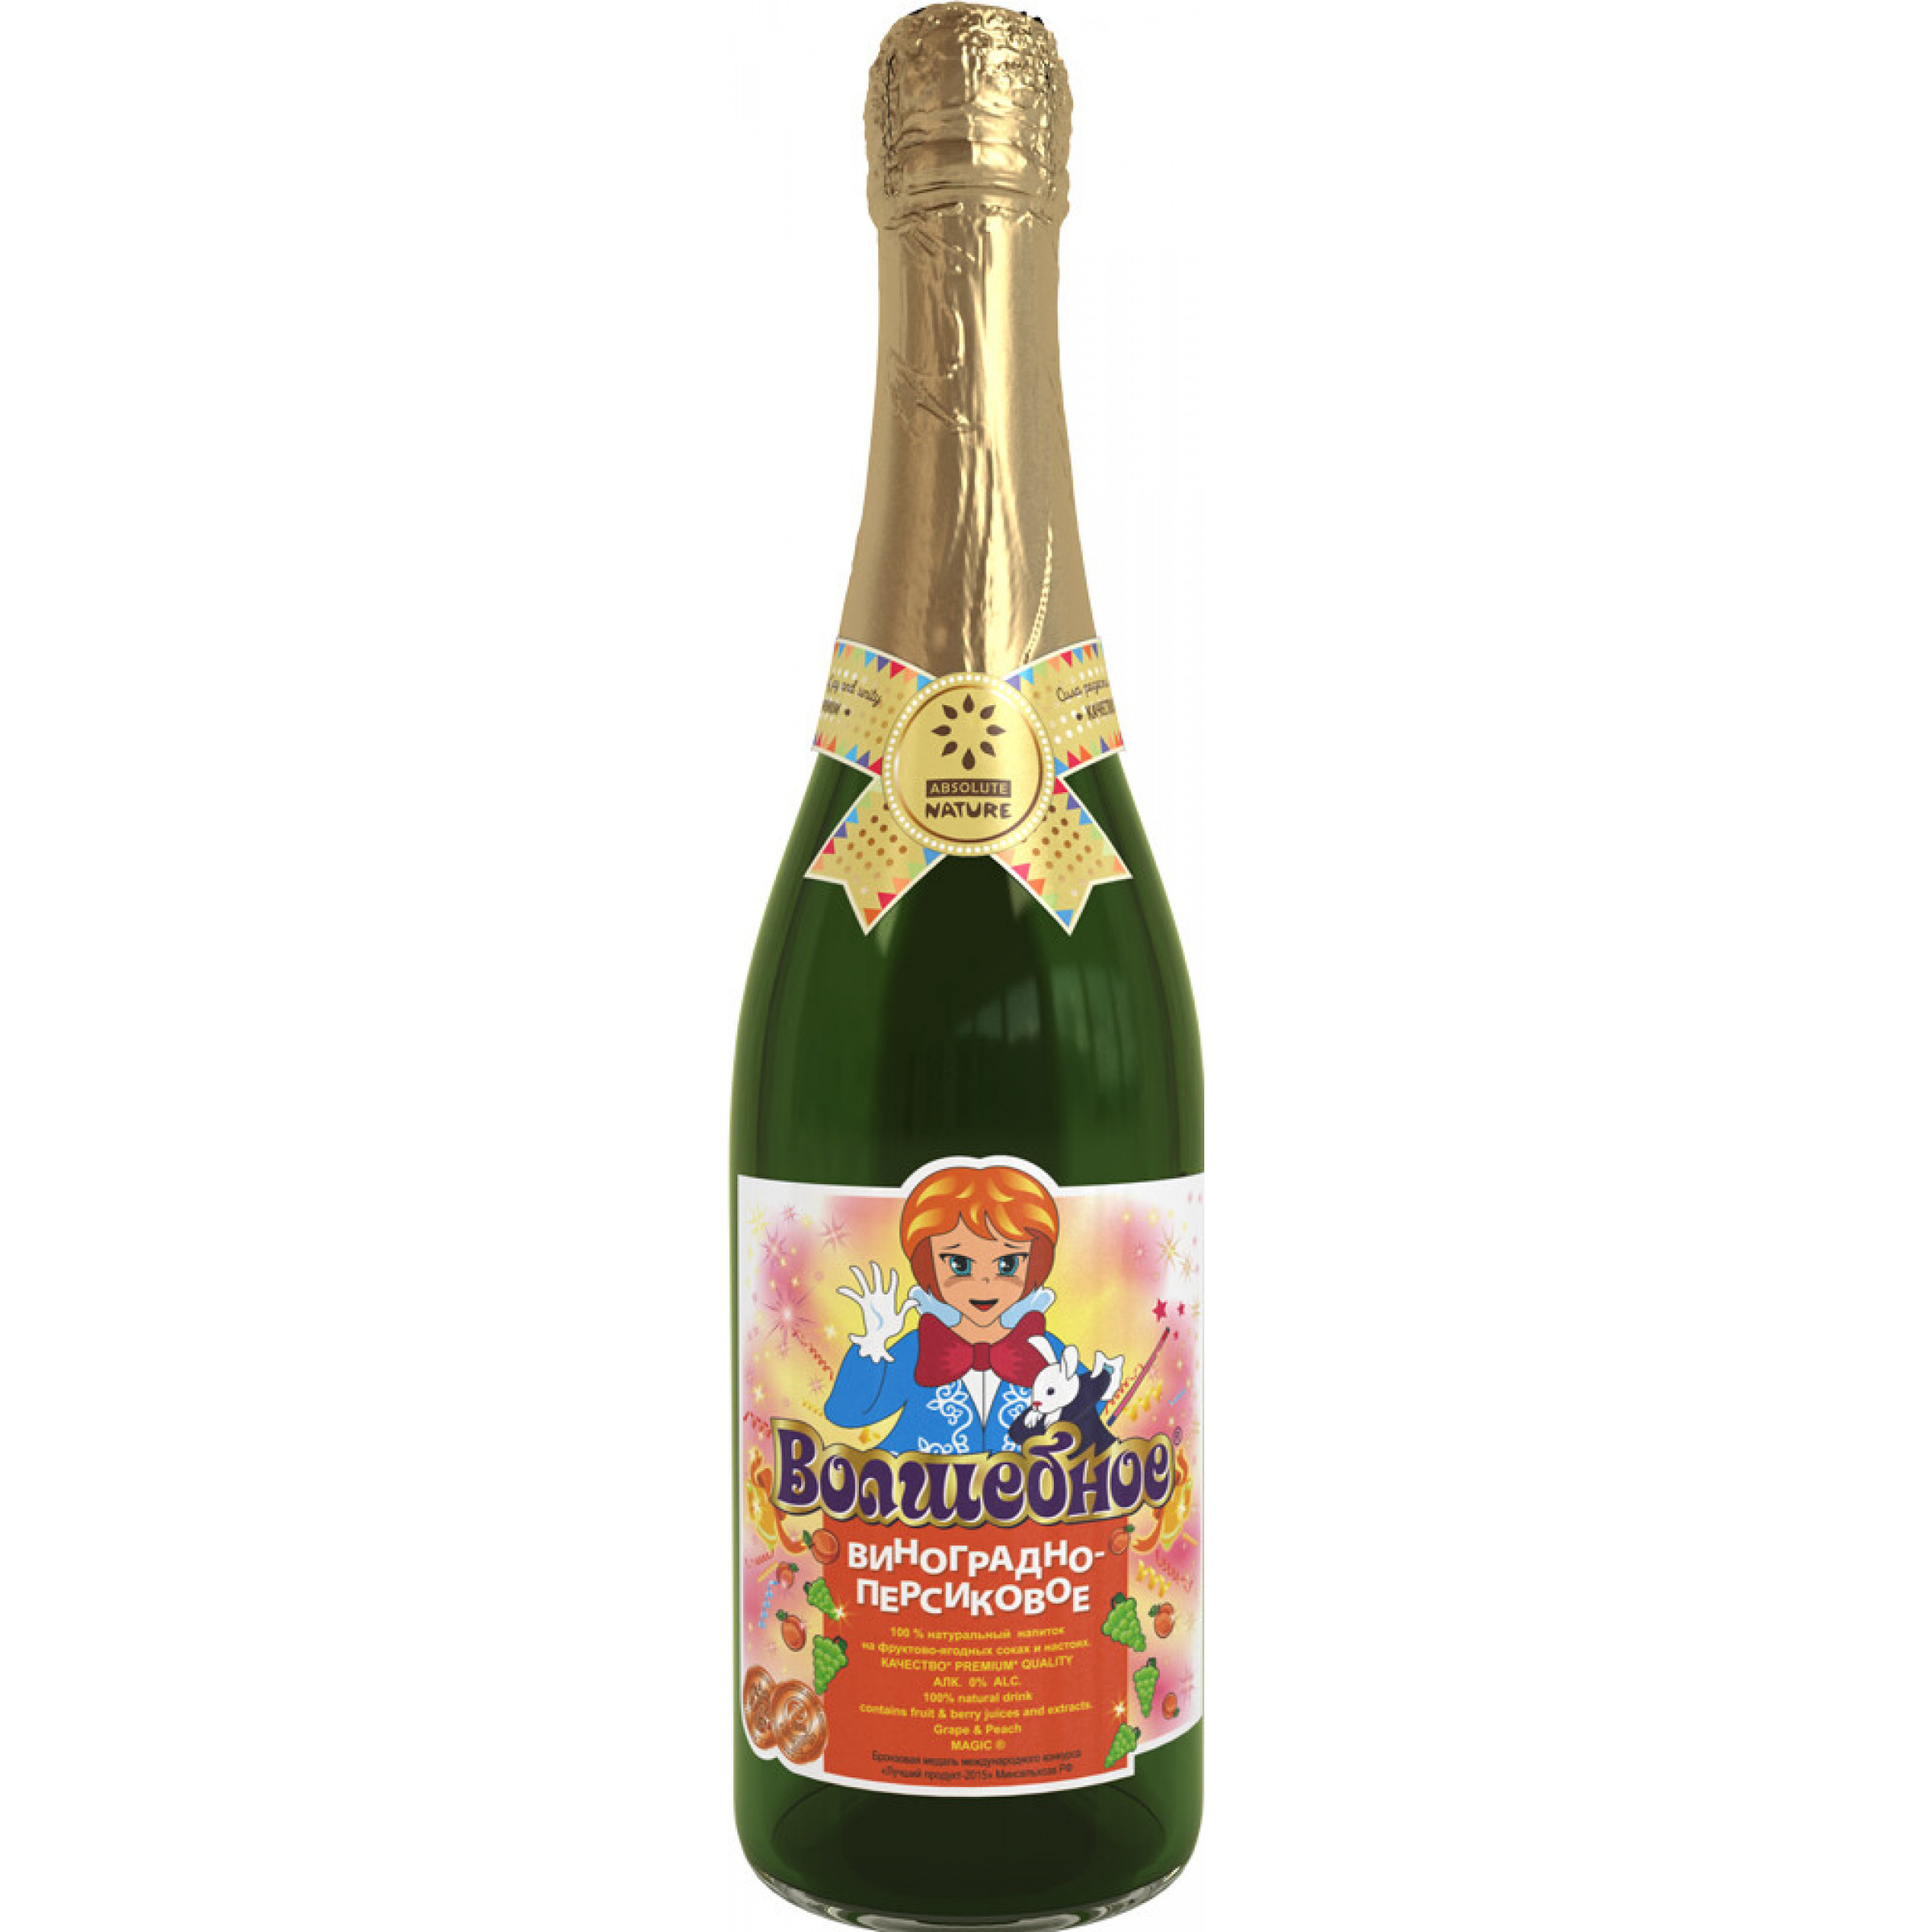 Детское Шампанское Виноградно-персиковое Волшебное, 750 мл